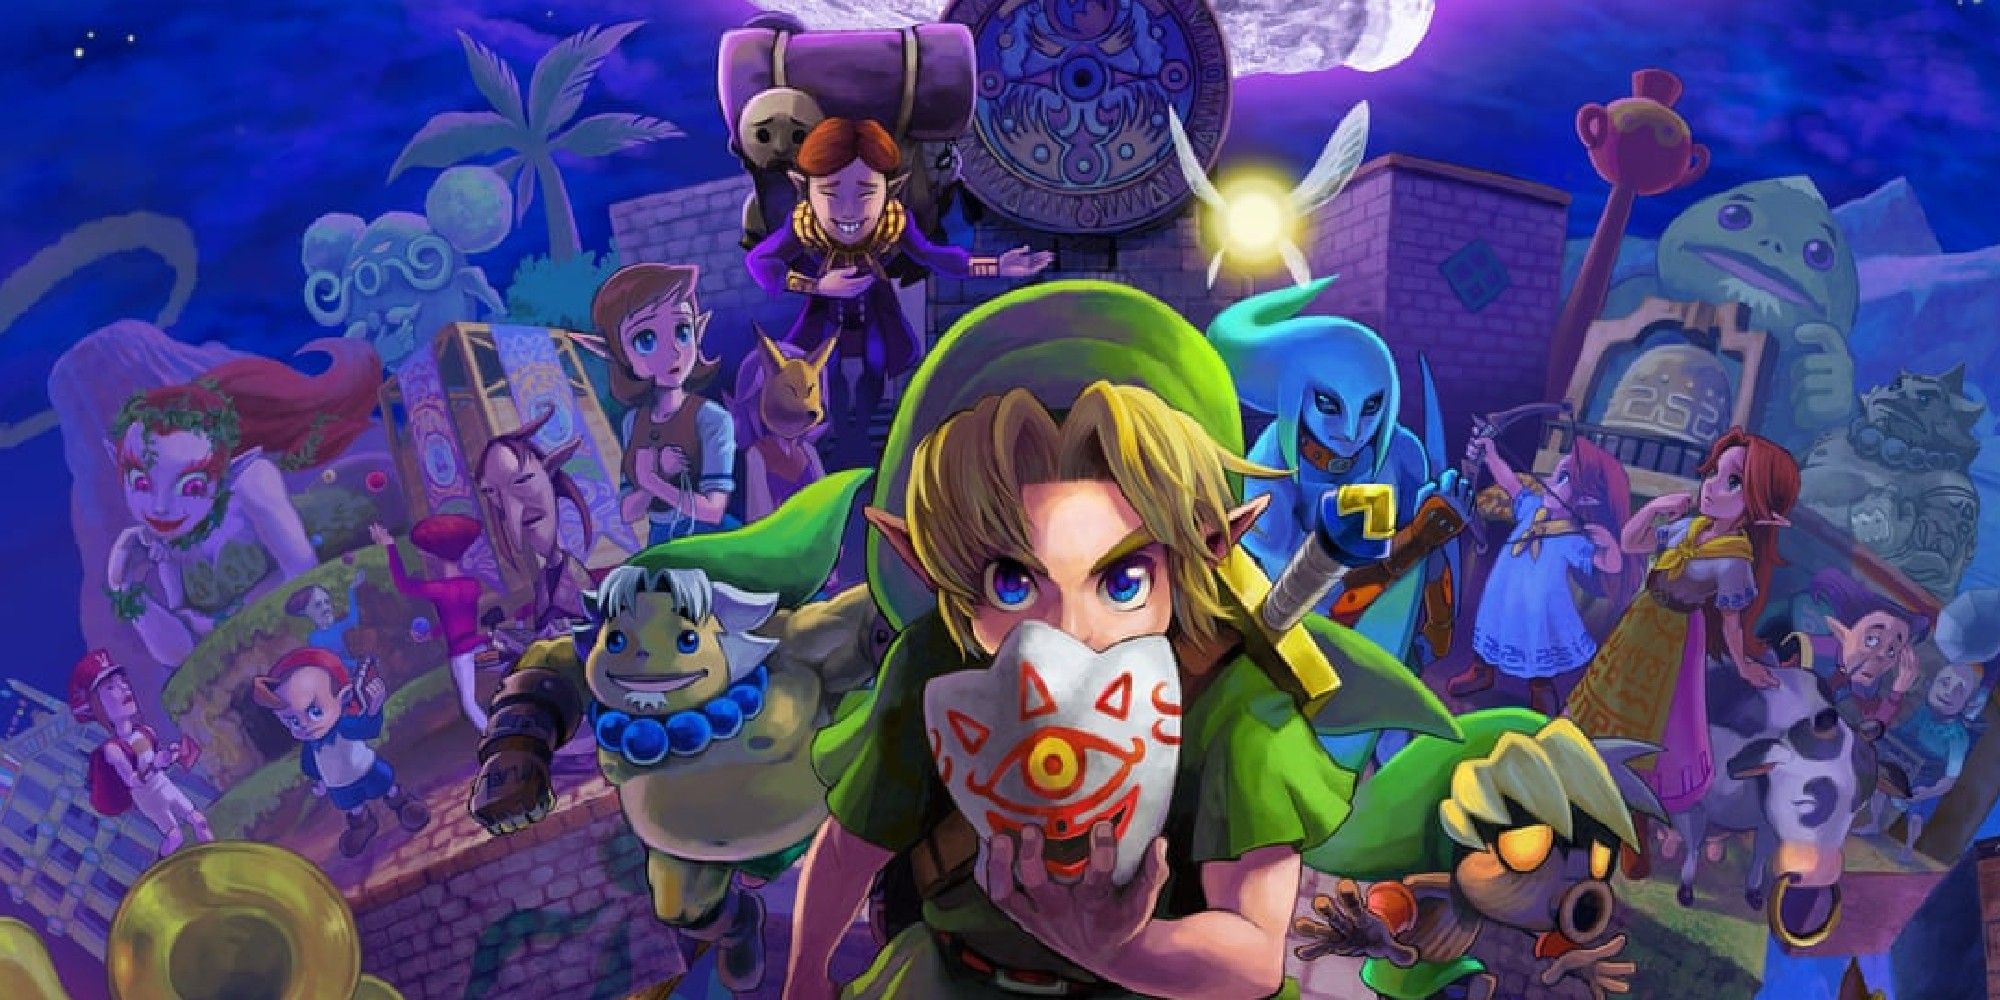 The Legend of Zelda: Majora's Mask - Speedrun